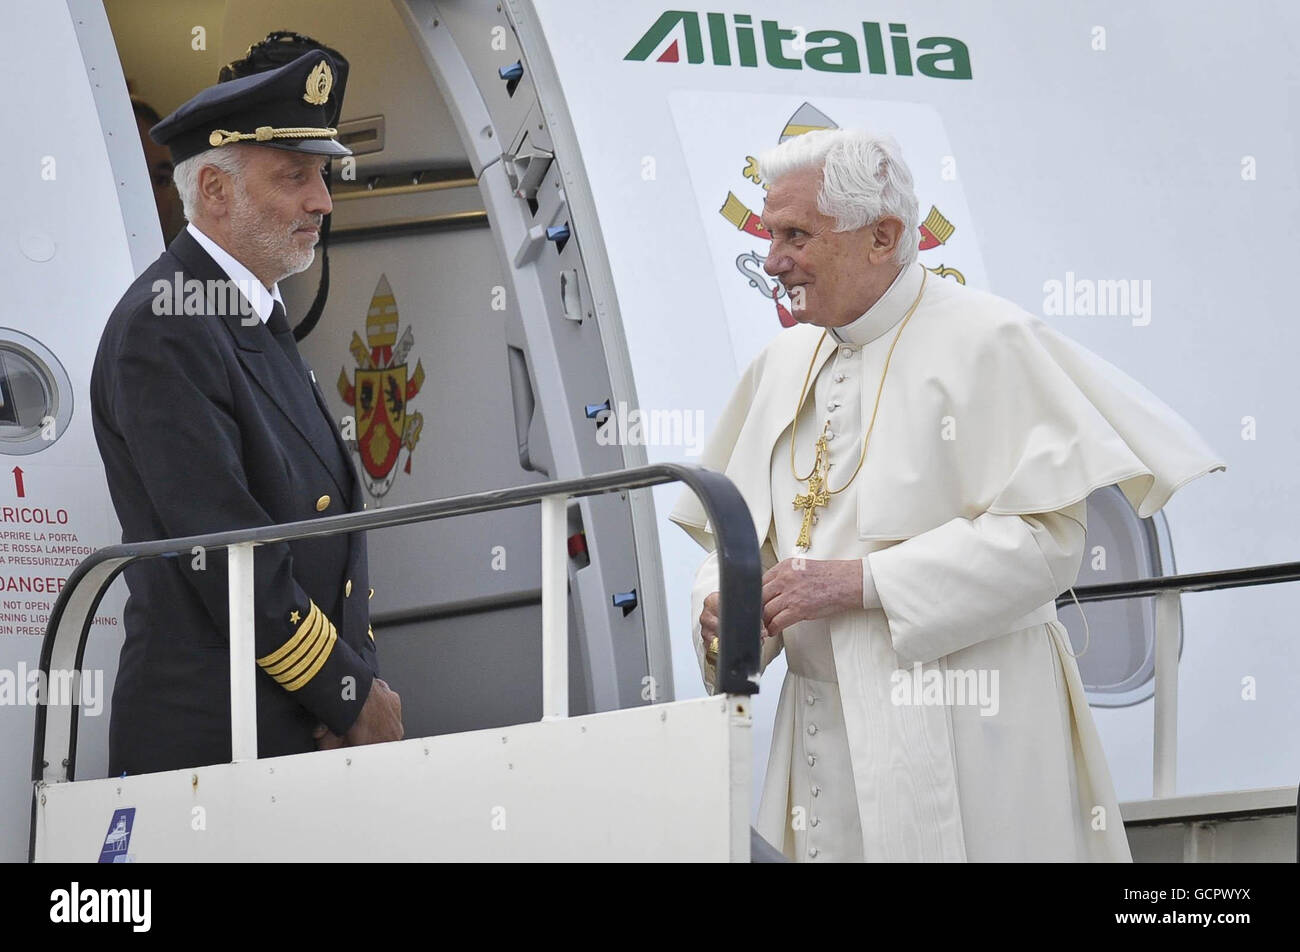 Le pape Benoît XVI regarde un membre de l'équipage sur les marches de son avion lors d'une cérémonie de départ à l'aéroport international de Birmingham le dernier jour de sa visite d'État au Royaume-Uni. Banque D'Images